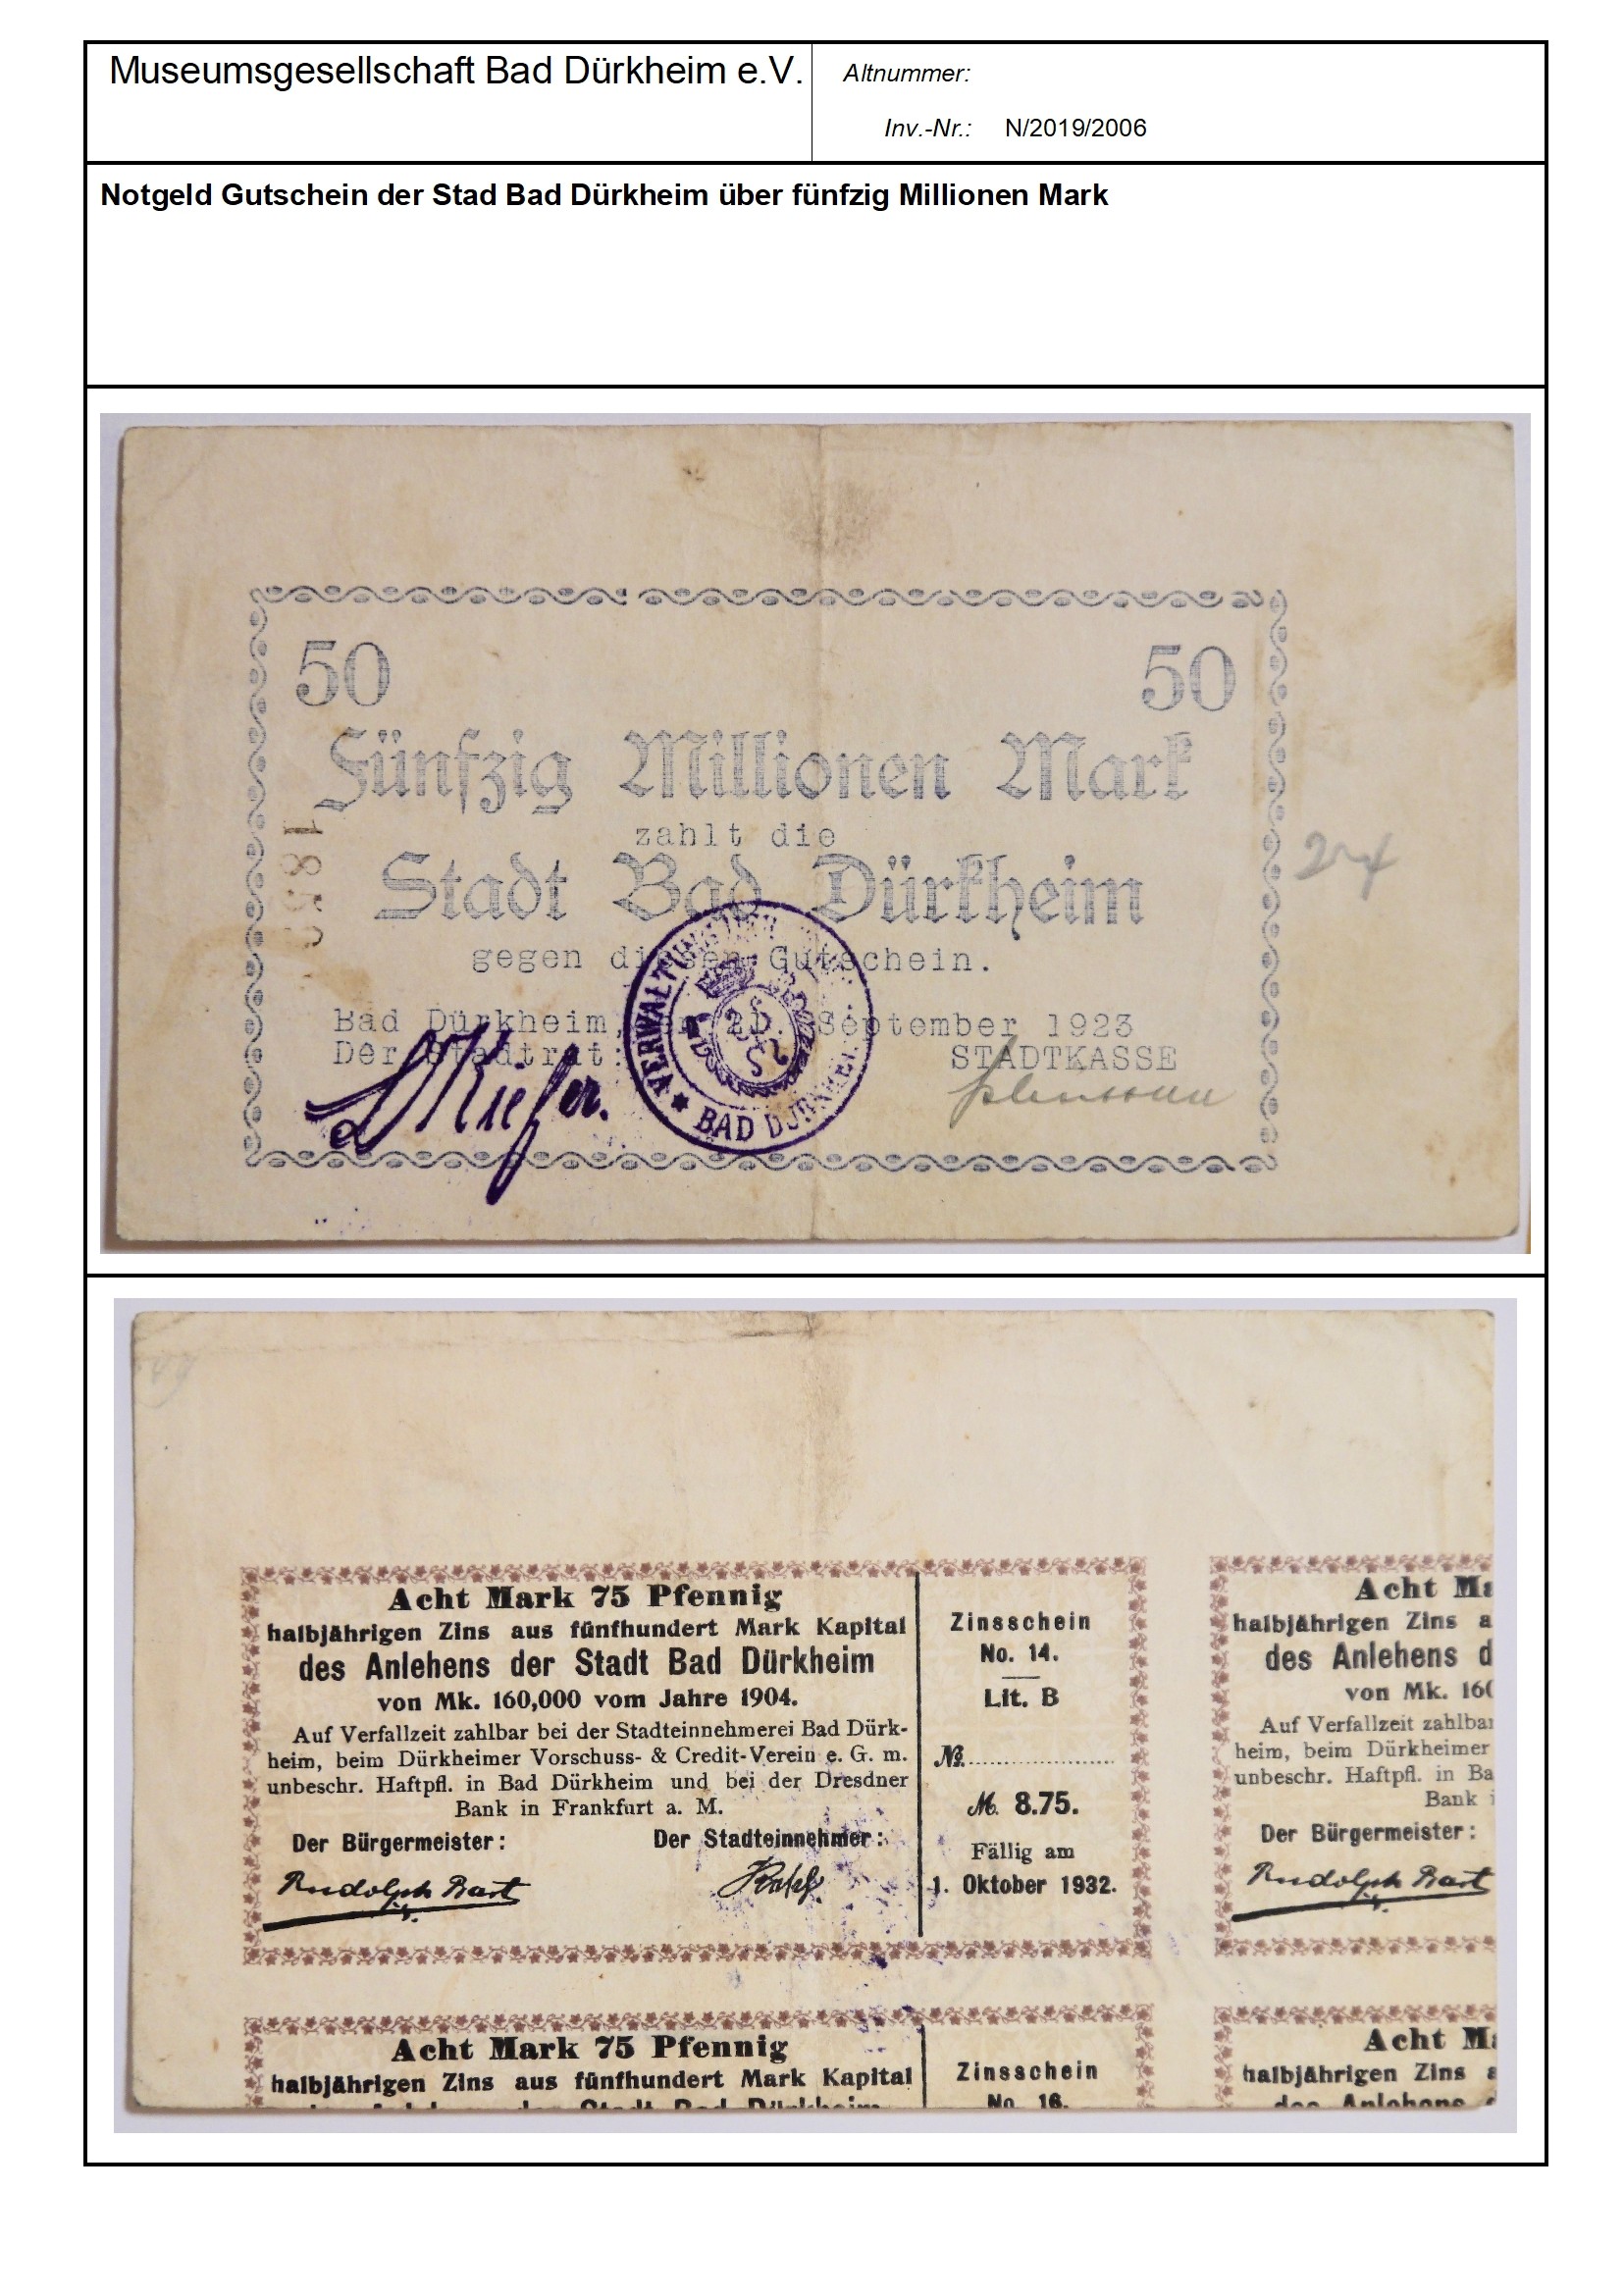 Notgeld Gutschein der Stad Bad Dürkheim über fünfzig Millionen Mark
Serien-Nummer: 1859 (Museumsgesellschaft Bad Dürkheim e.V. CC BY-NC-SA)